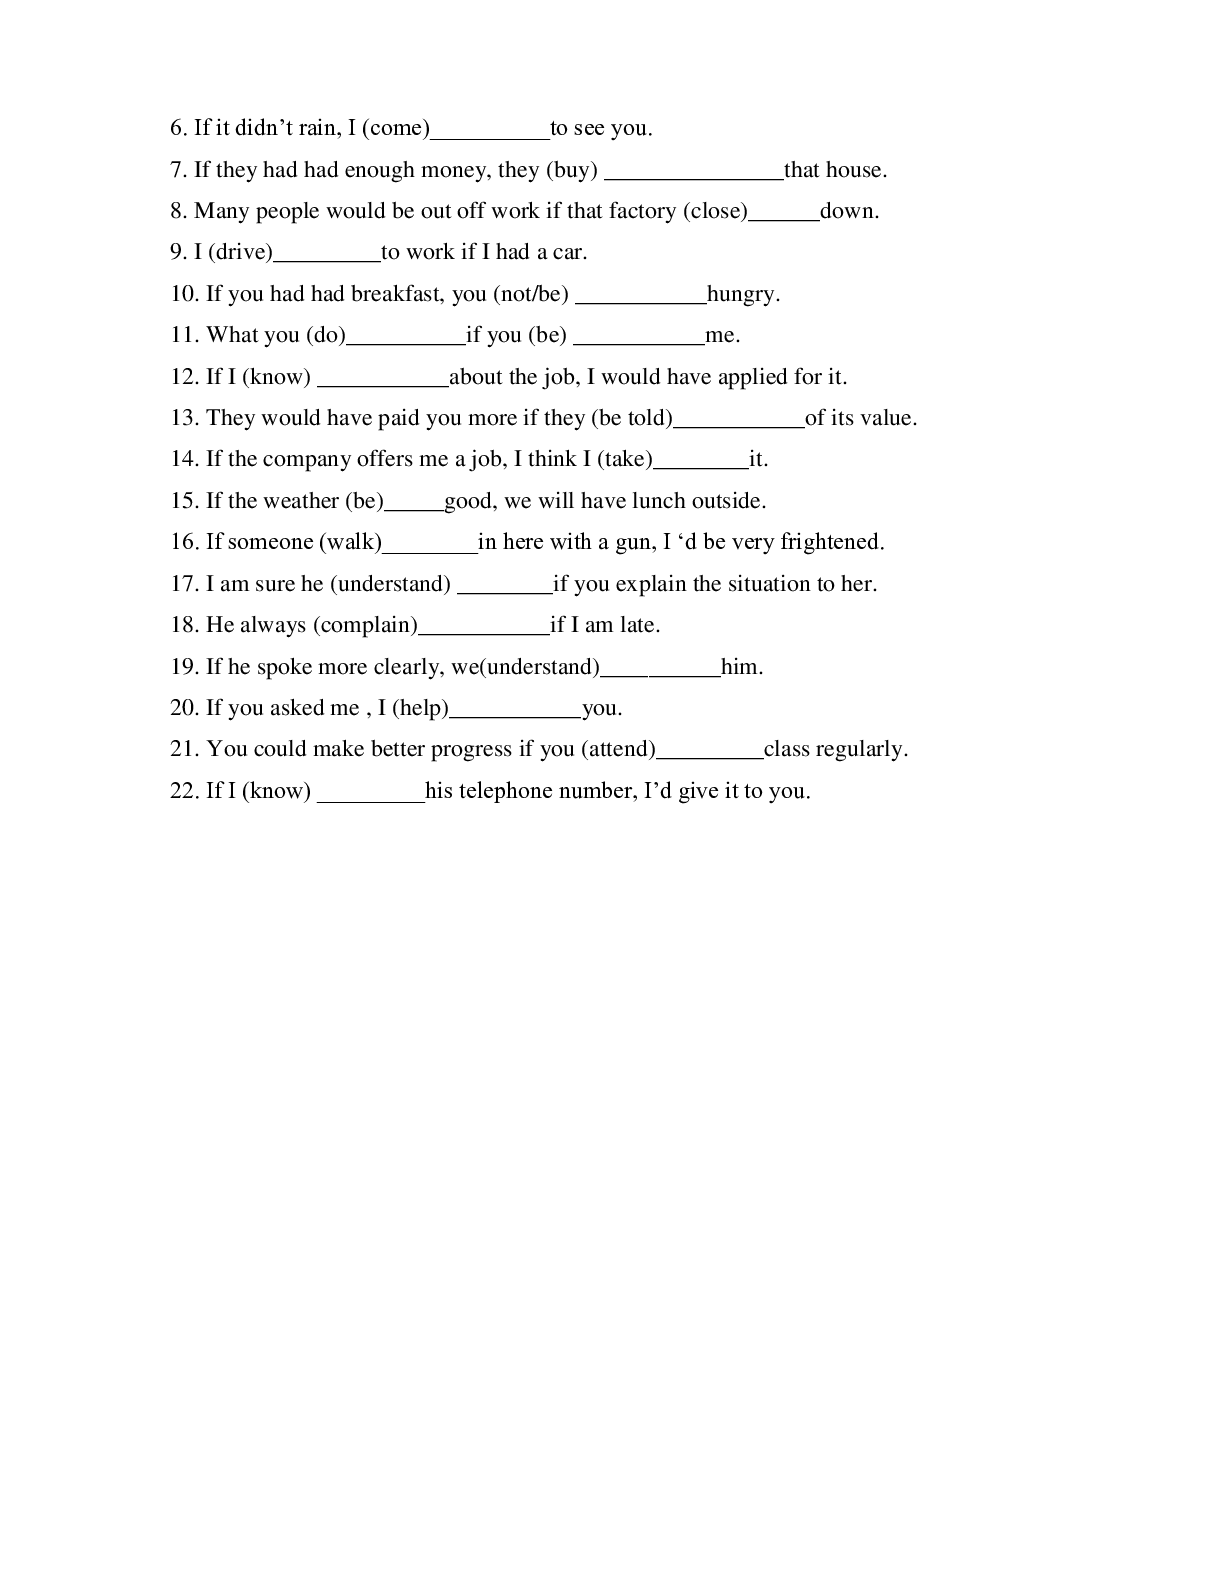 Chuyên đề: Câu điều kiện môn Tiếng Anh lớp 12 (trang 5)